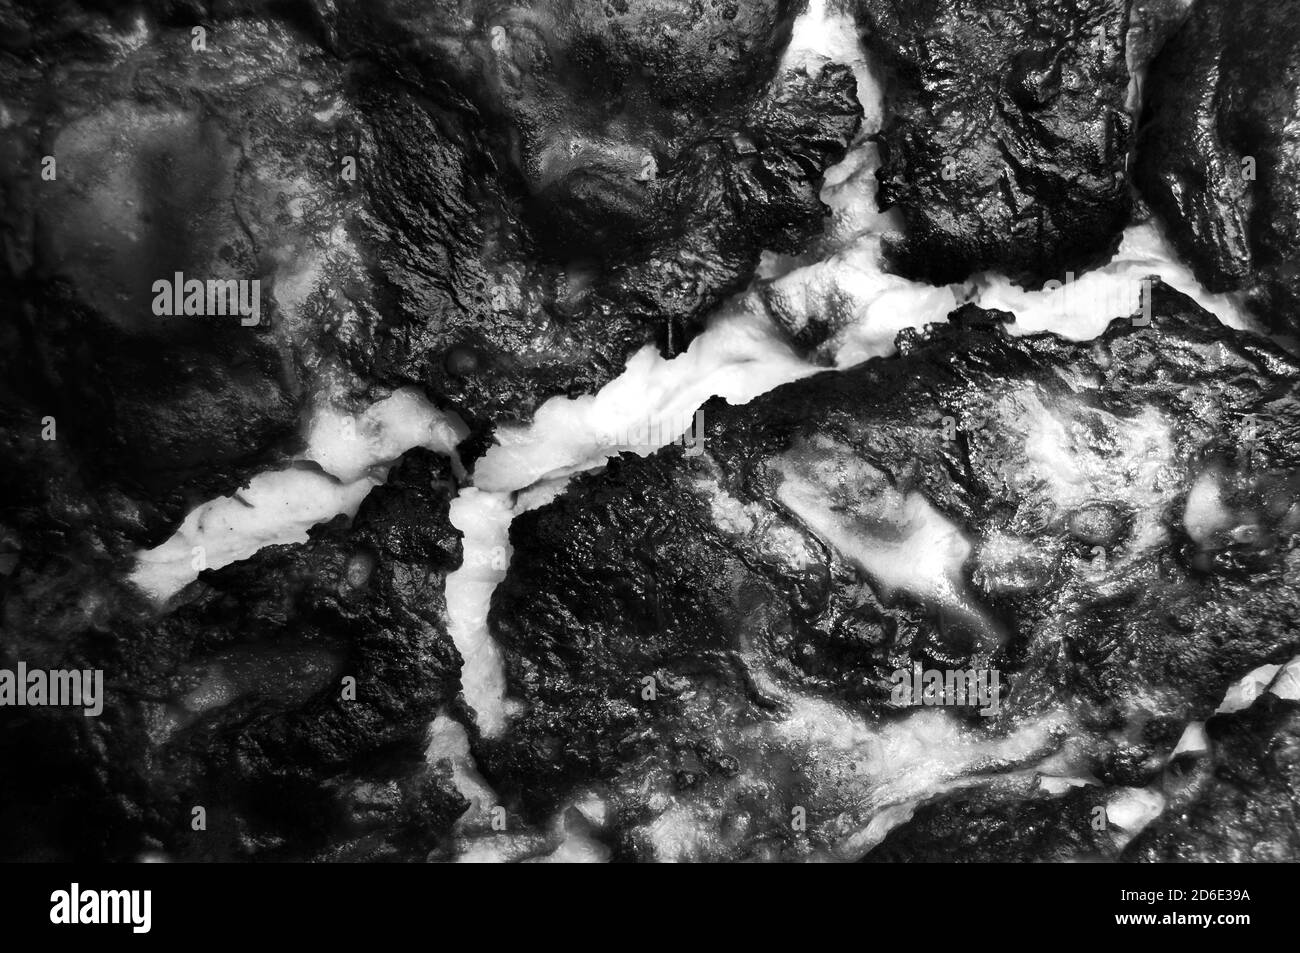 tessuto lavico bianco caldo solidificato del vulcano eruttivo in nero e bianco Foto Stock